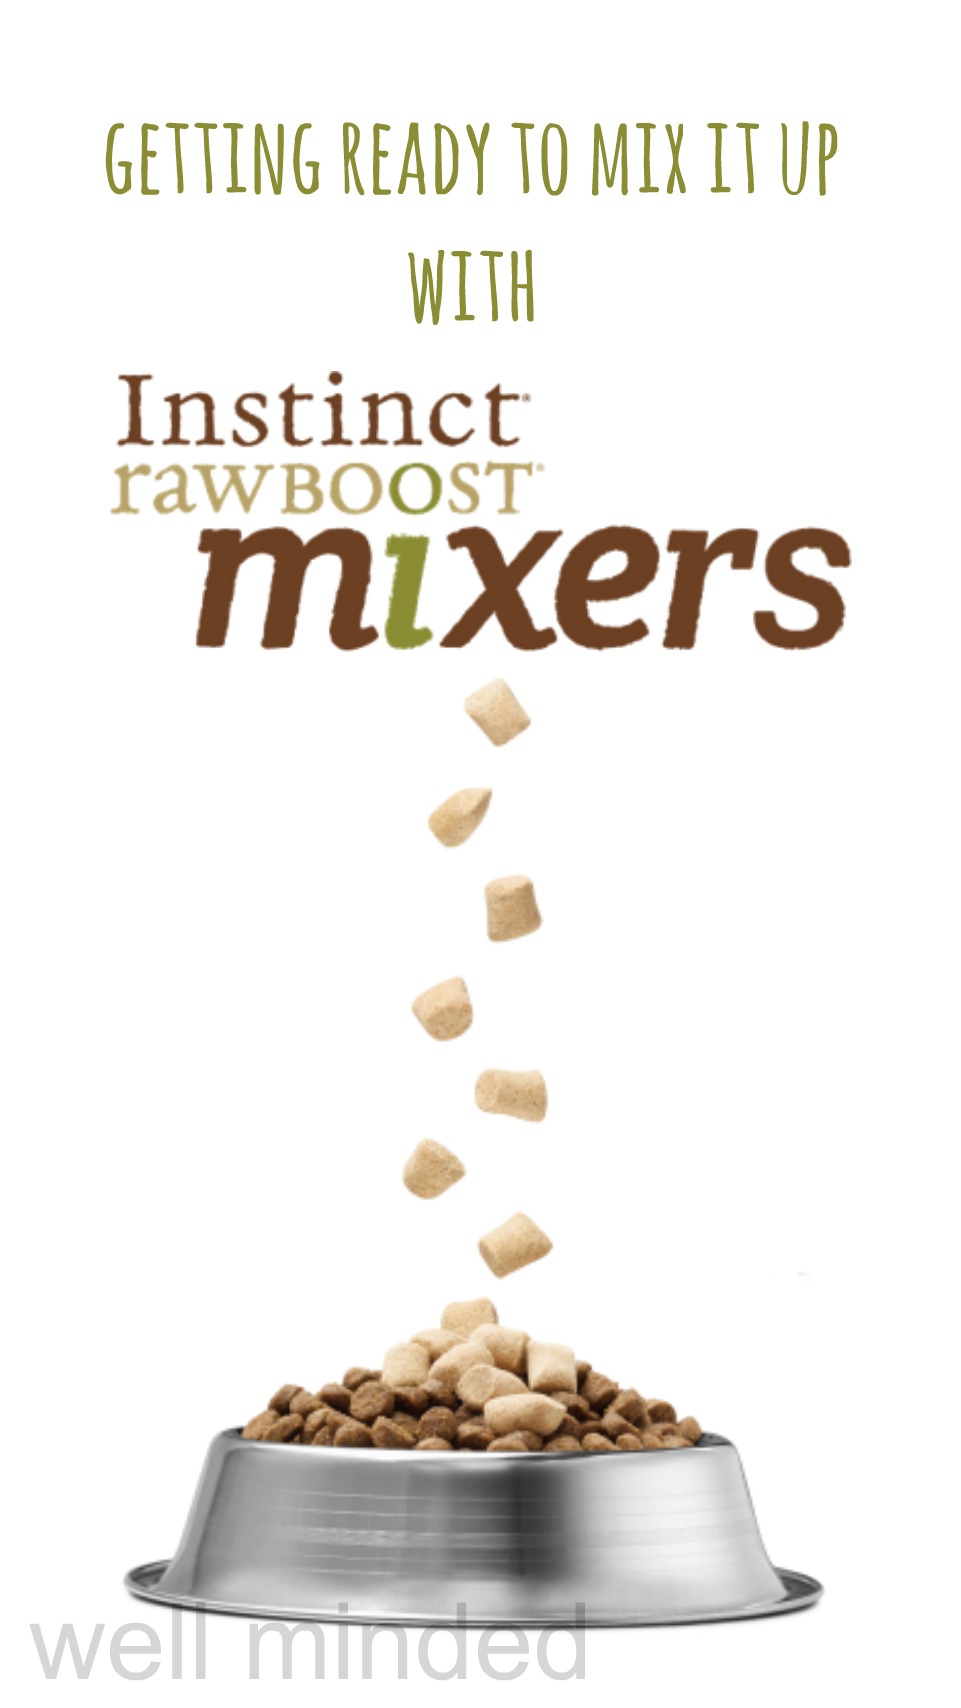 instinct raw mixers